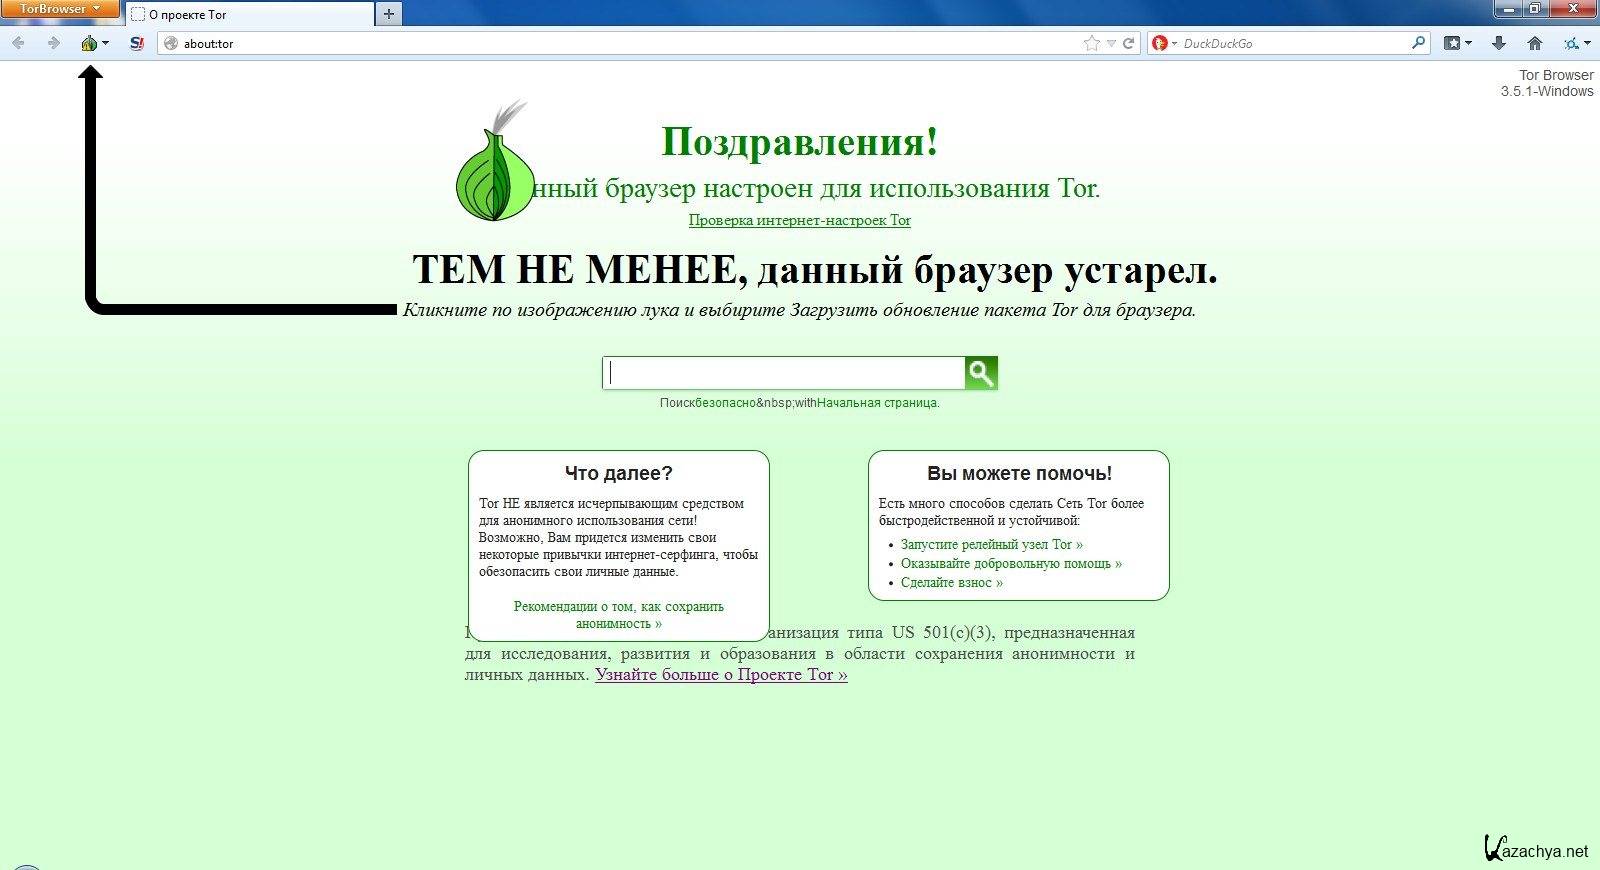 скачать тор браузер бесплатно на русском языке для windows 7 через торрент даркнет